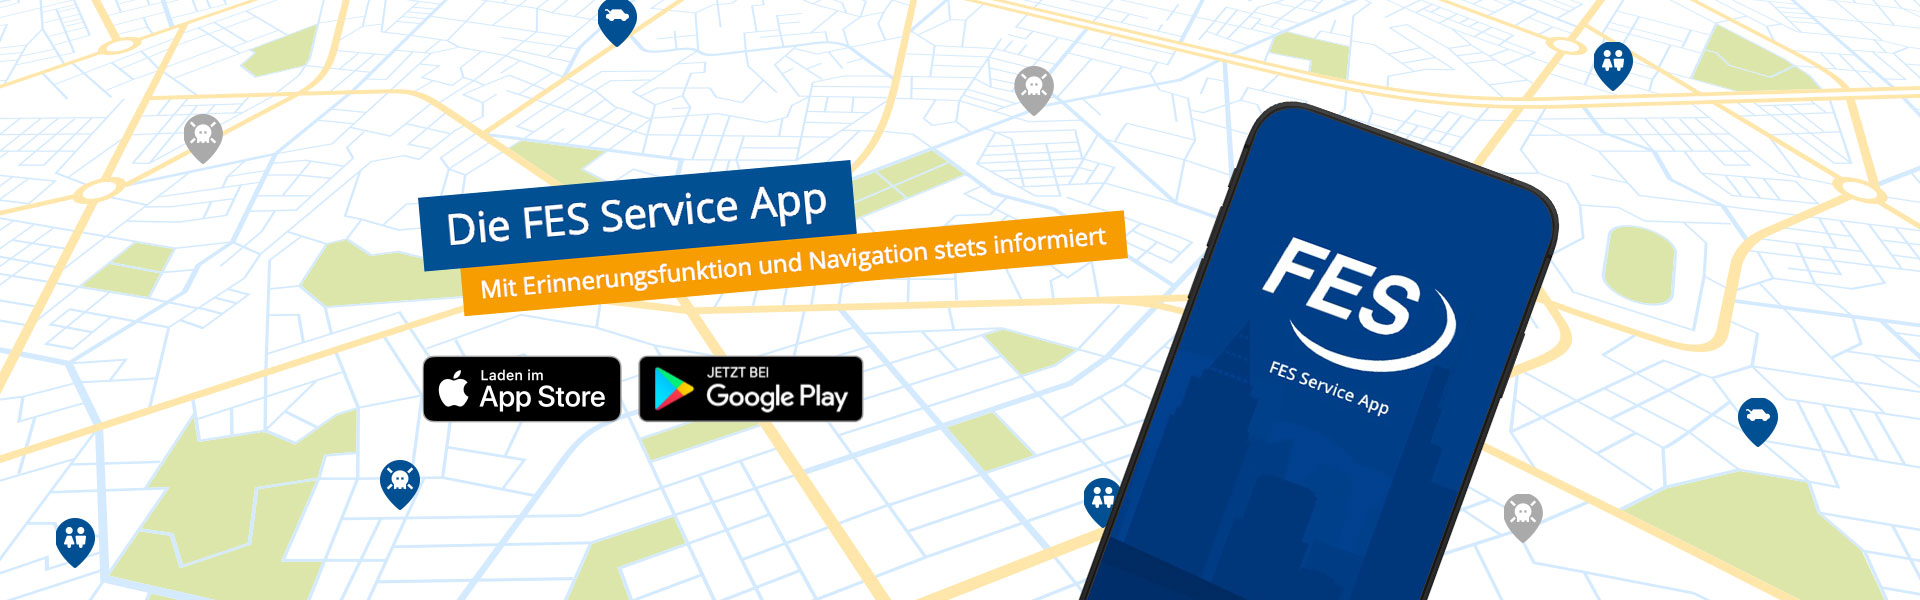 Die FES Service App – Mit Erinnerungsfunktion und Navigation stets informiert